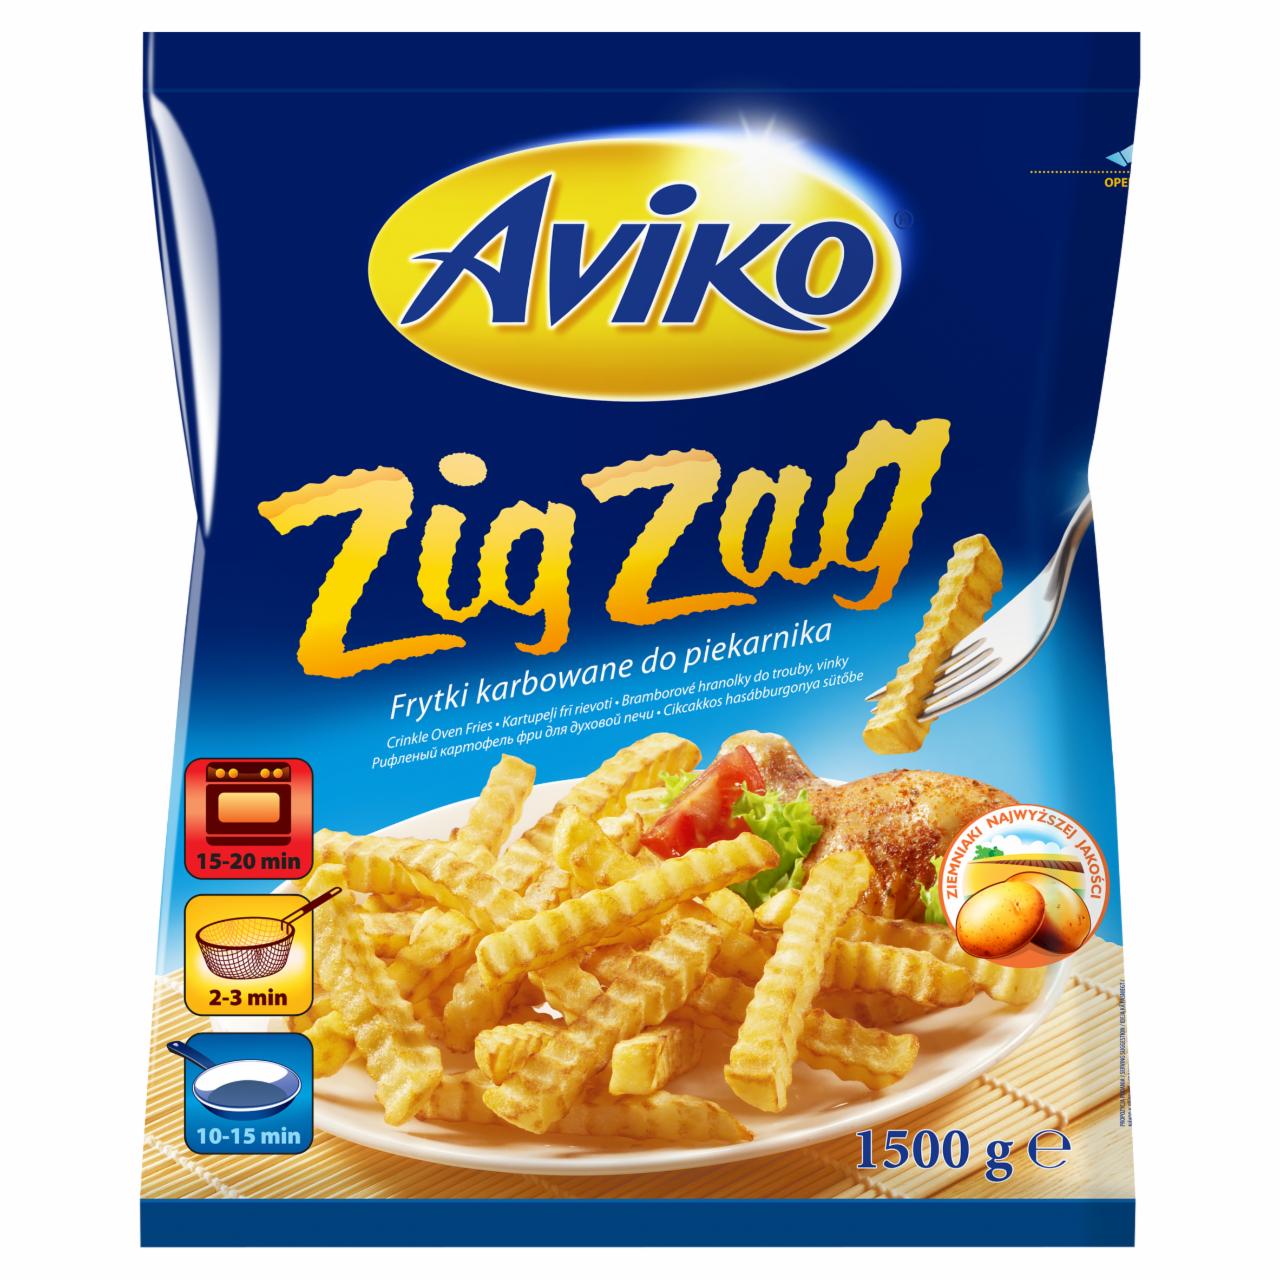 Képek - Aviko Zig Zag elősütött, gyorsfagyasztott, cikcakkos hasábburgonya sütőbe 1500 g